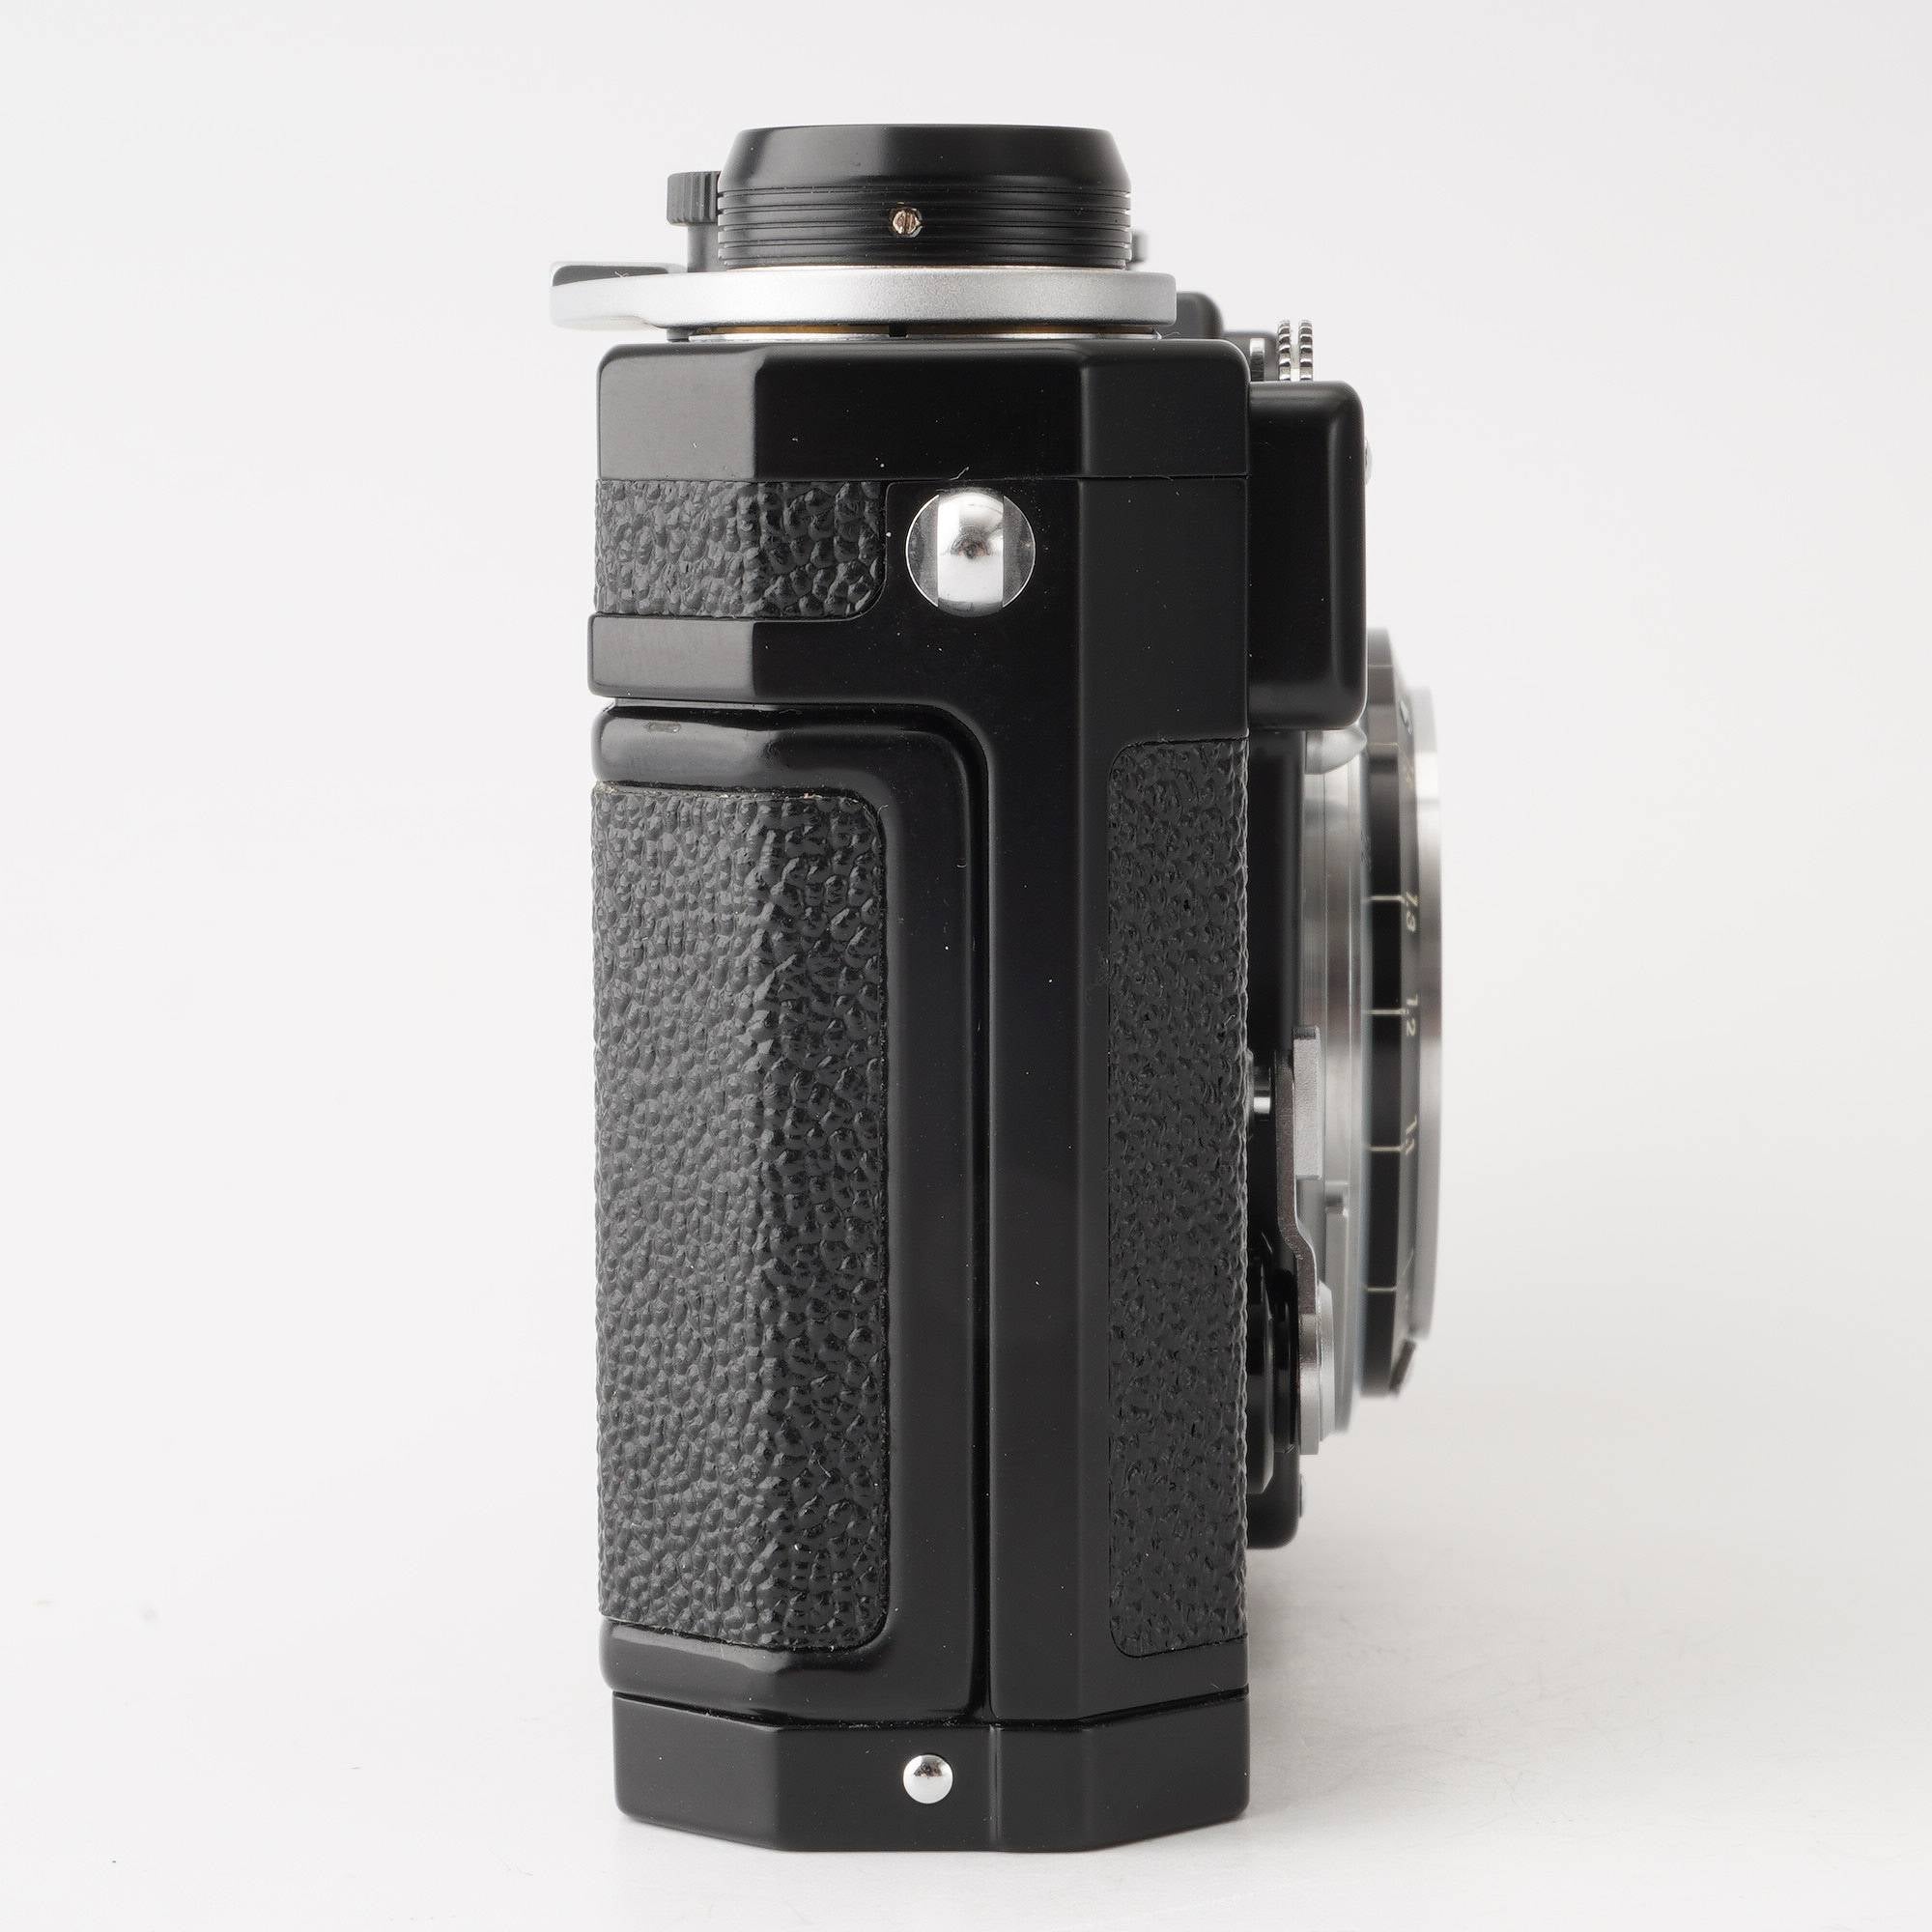 ニコン Nikon S3 LIMITED EDITION ブラックオーバーホール済 – Natural 